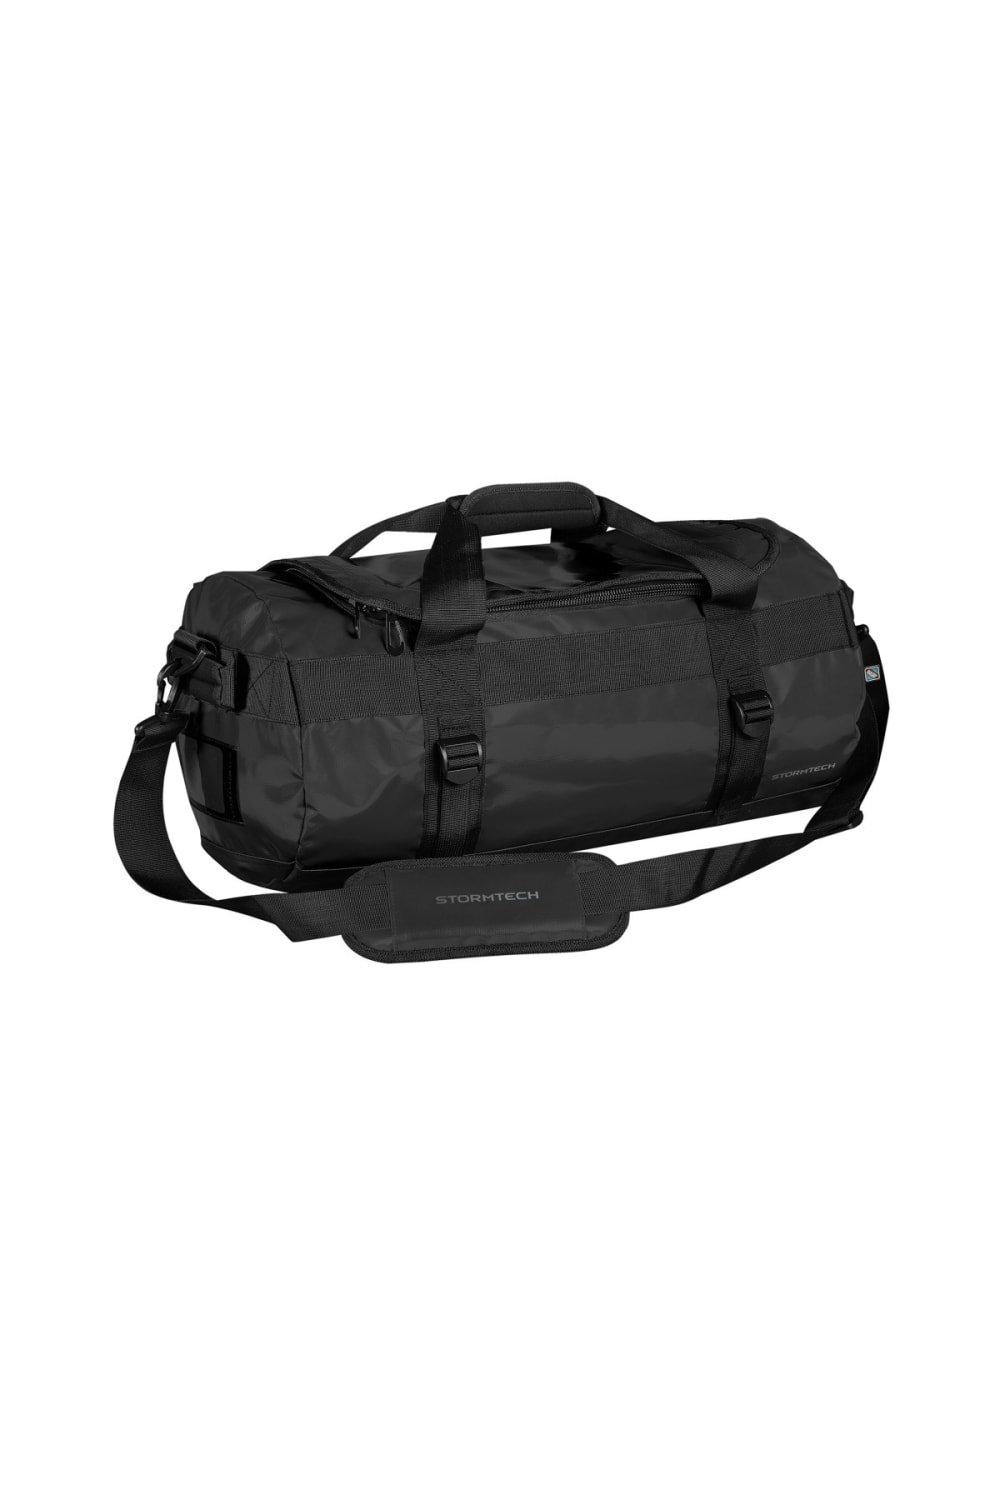 Водонепроницаемая сумка для снаряжения (маленькая) Stormtech, черный фото